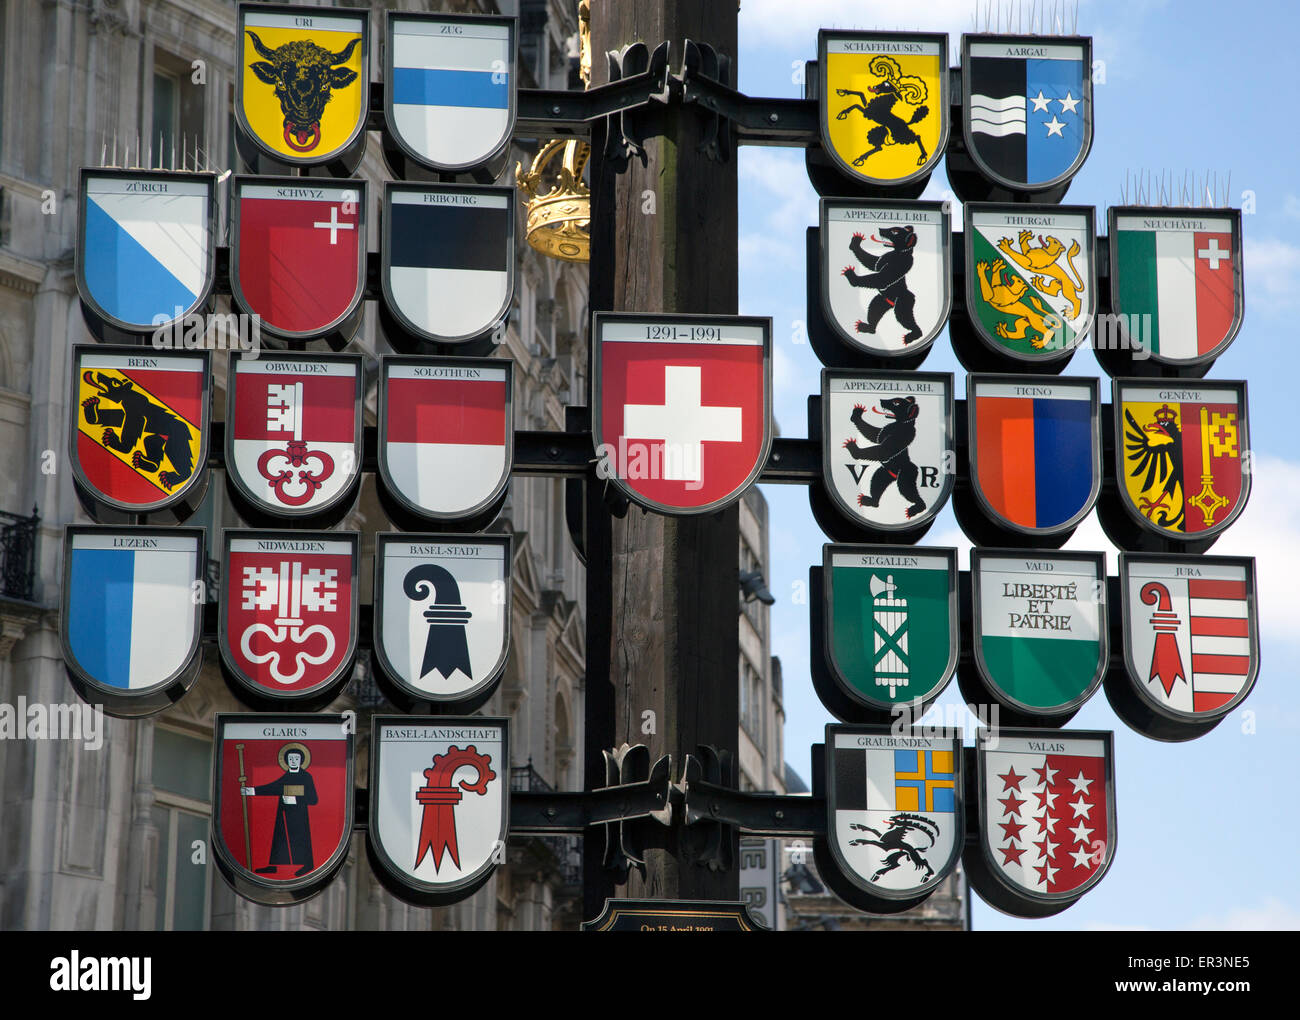 Struttura cantonale in Leicester Square Londra con stemmi dei 26 cantoni della Svizzera Foto Stock